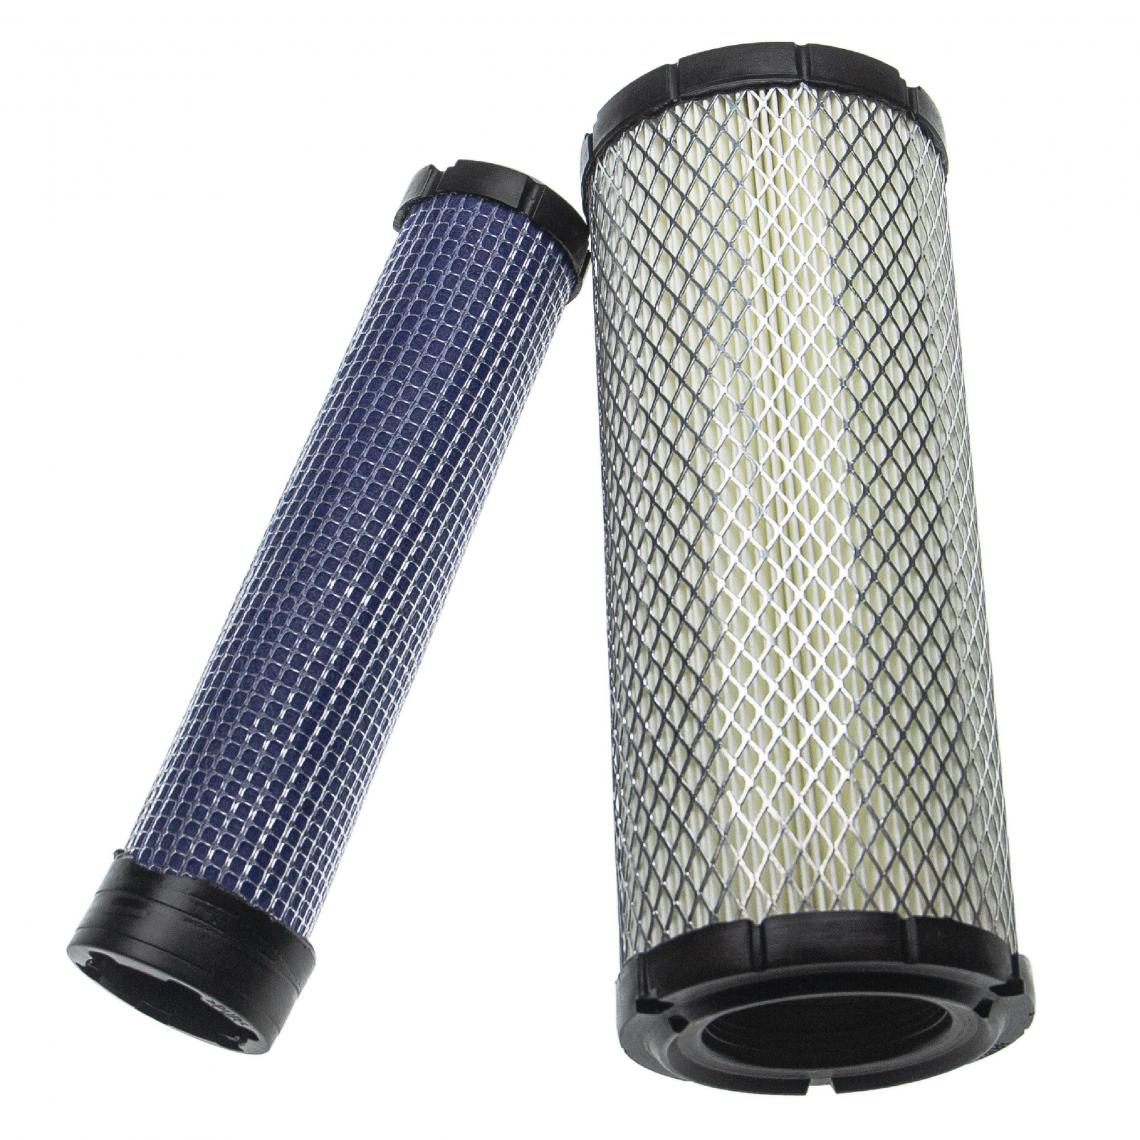 Vhbw - vhbw Lot de filtres compatible avec John Deere Z970R engin de chantier; 1x filtre interne, 1x filtre extérieur - Autre appareil de mesure